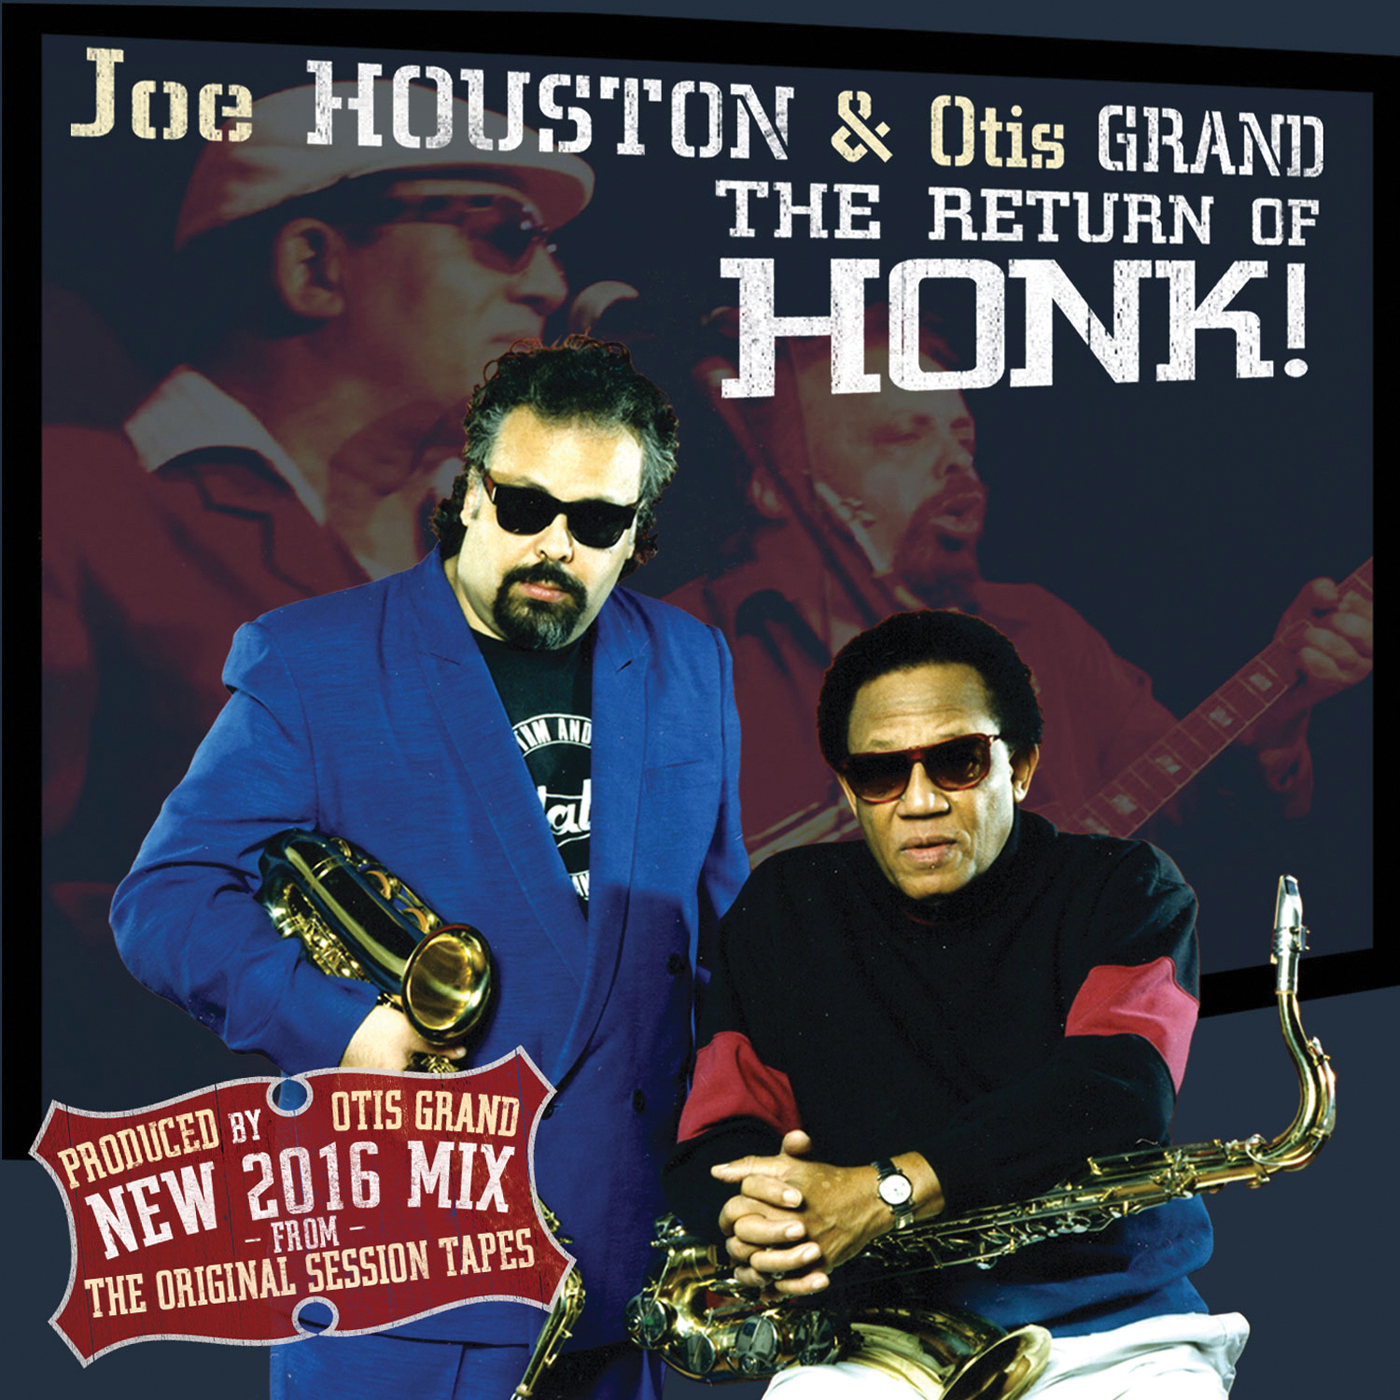 Joe Houston & Otis Grand - The Return of Honk!